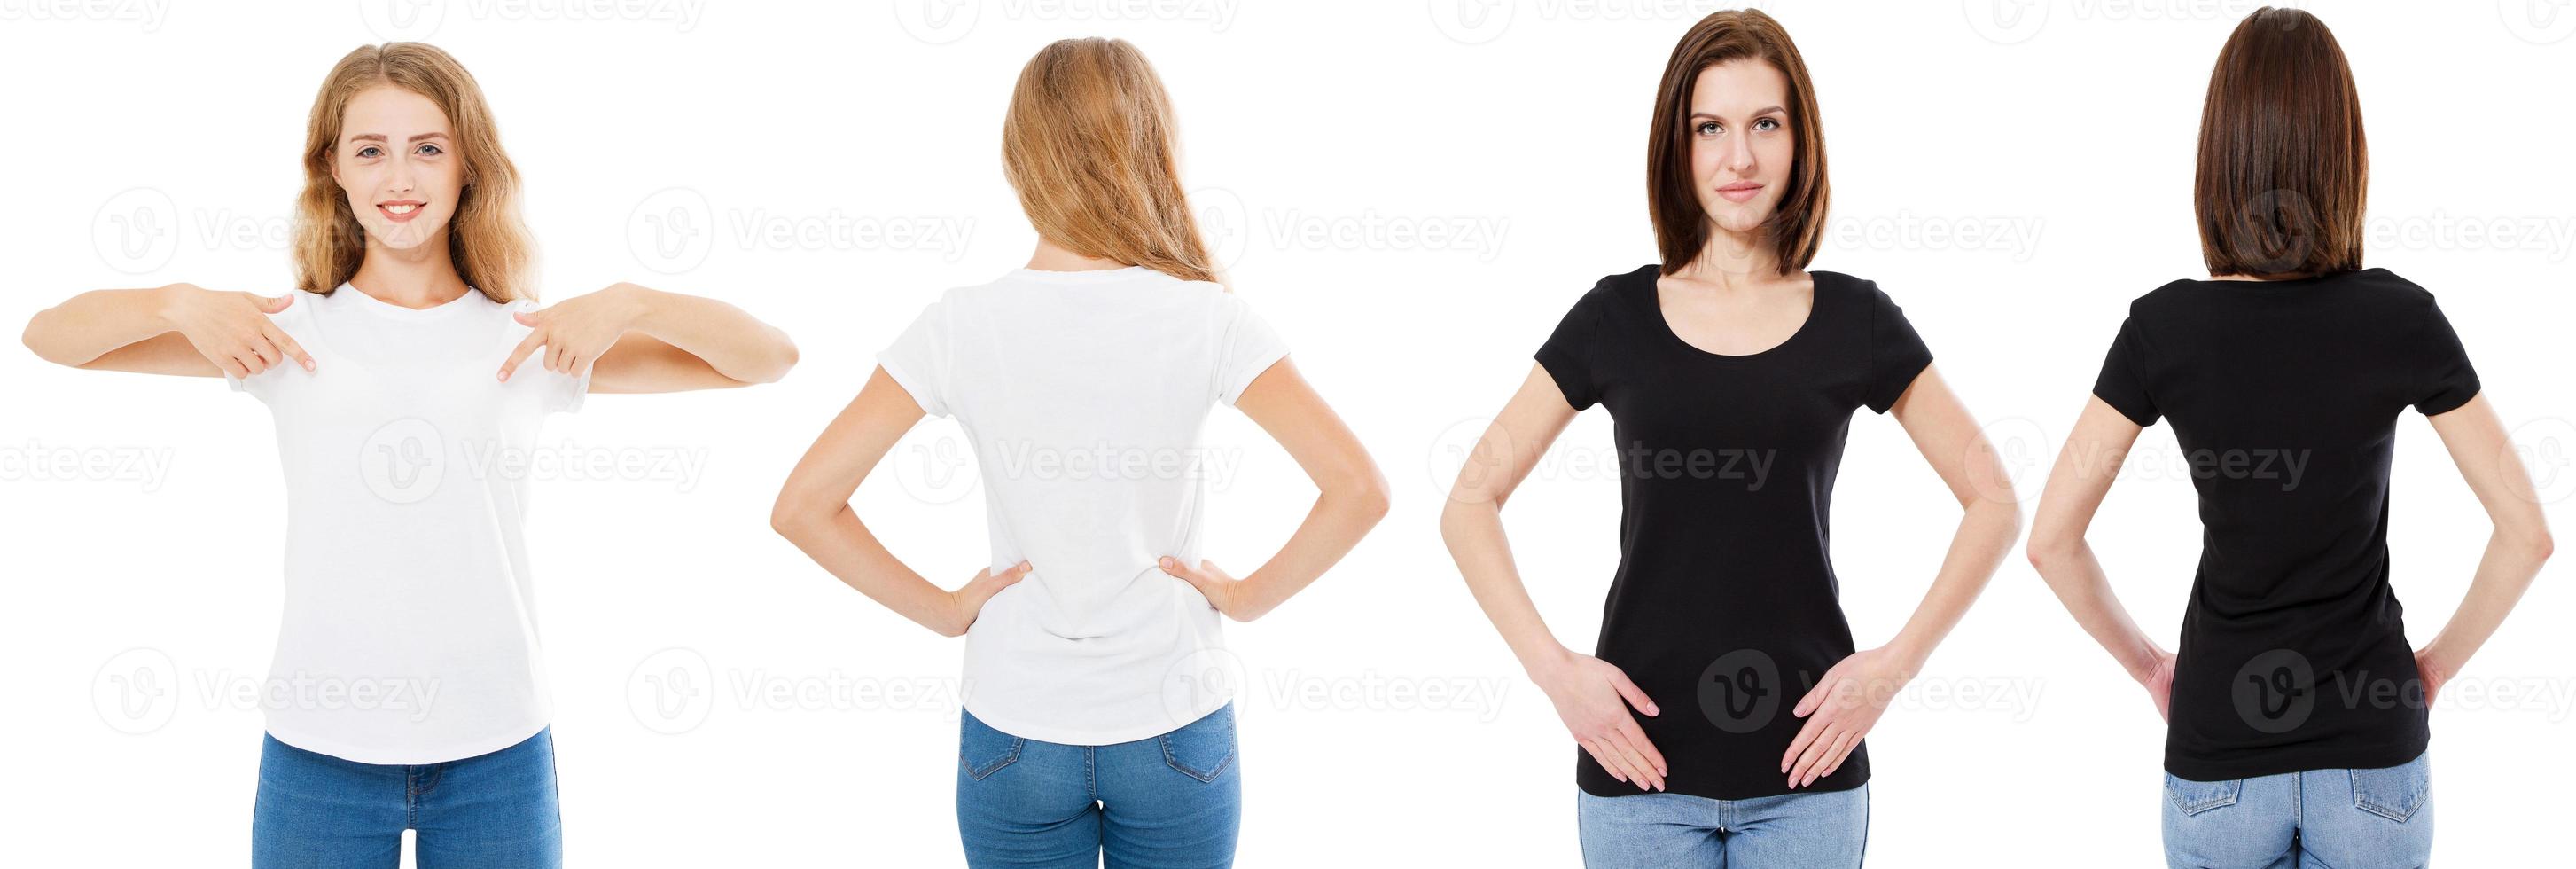 conjunto de t-shirt. vista frontal e traseira morena e loira em camiseta branca e preta isolada. duas garotas com uma camisa em branco, mock up, colagem, espaço de cópia, modelo foto